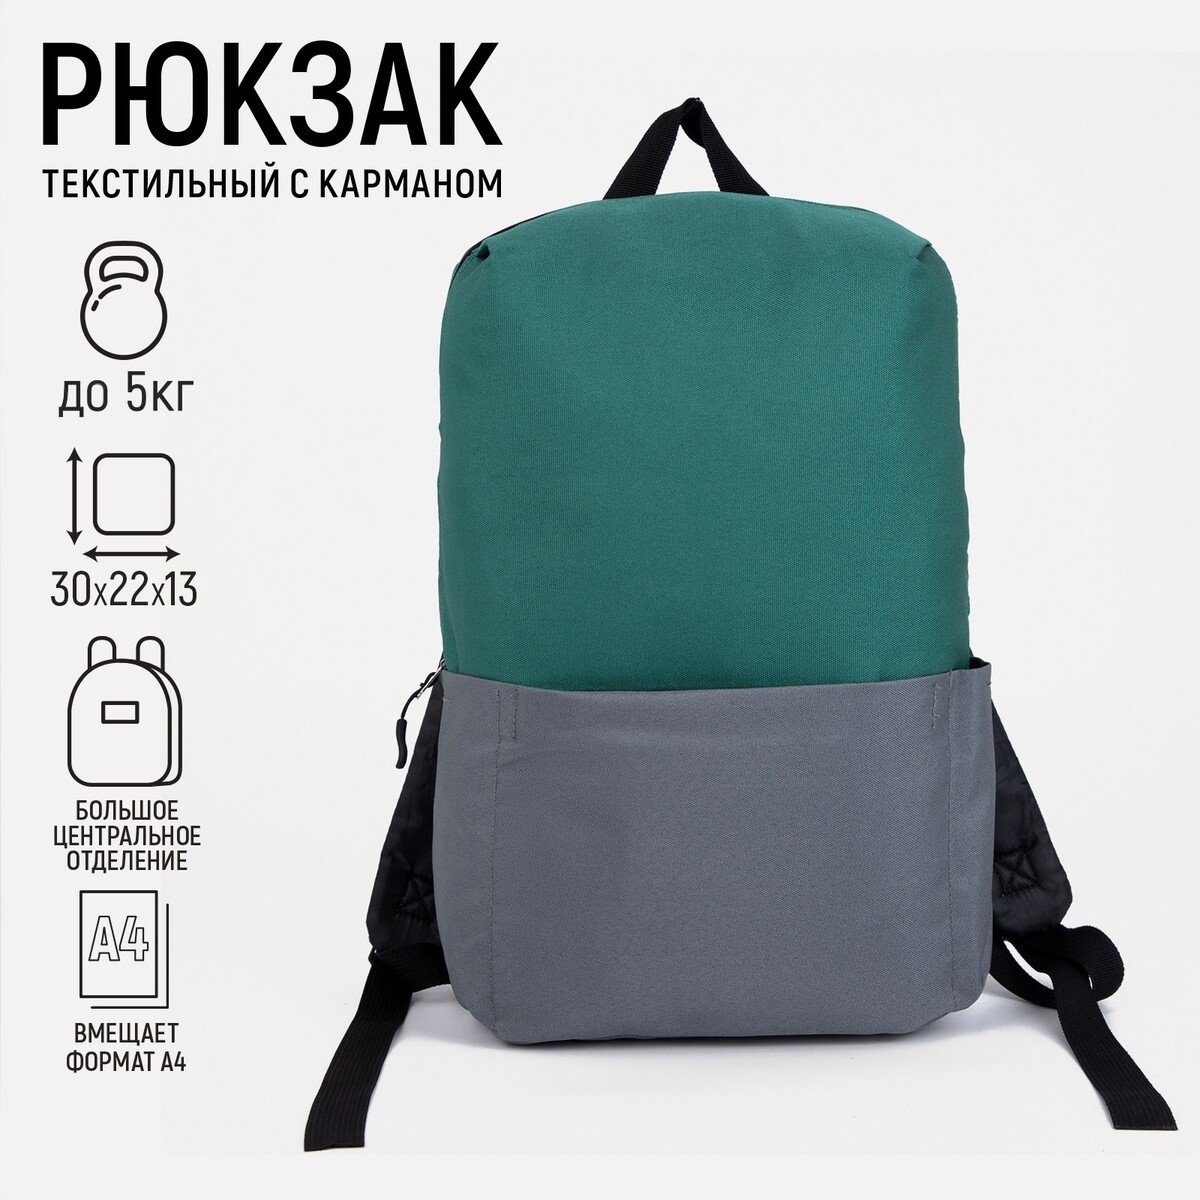 Рюкзак текстильный с карманом, серый/зеленый, 22х13х30 см рюкзак текстильный котик с карманом 27 11 37